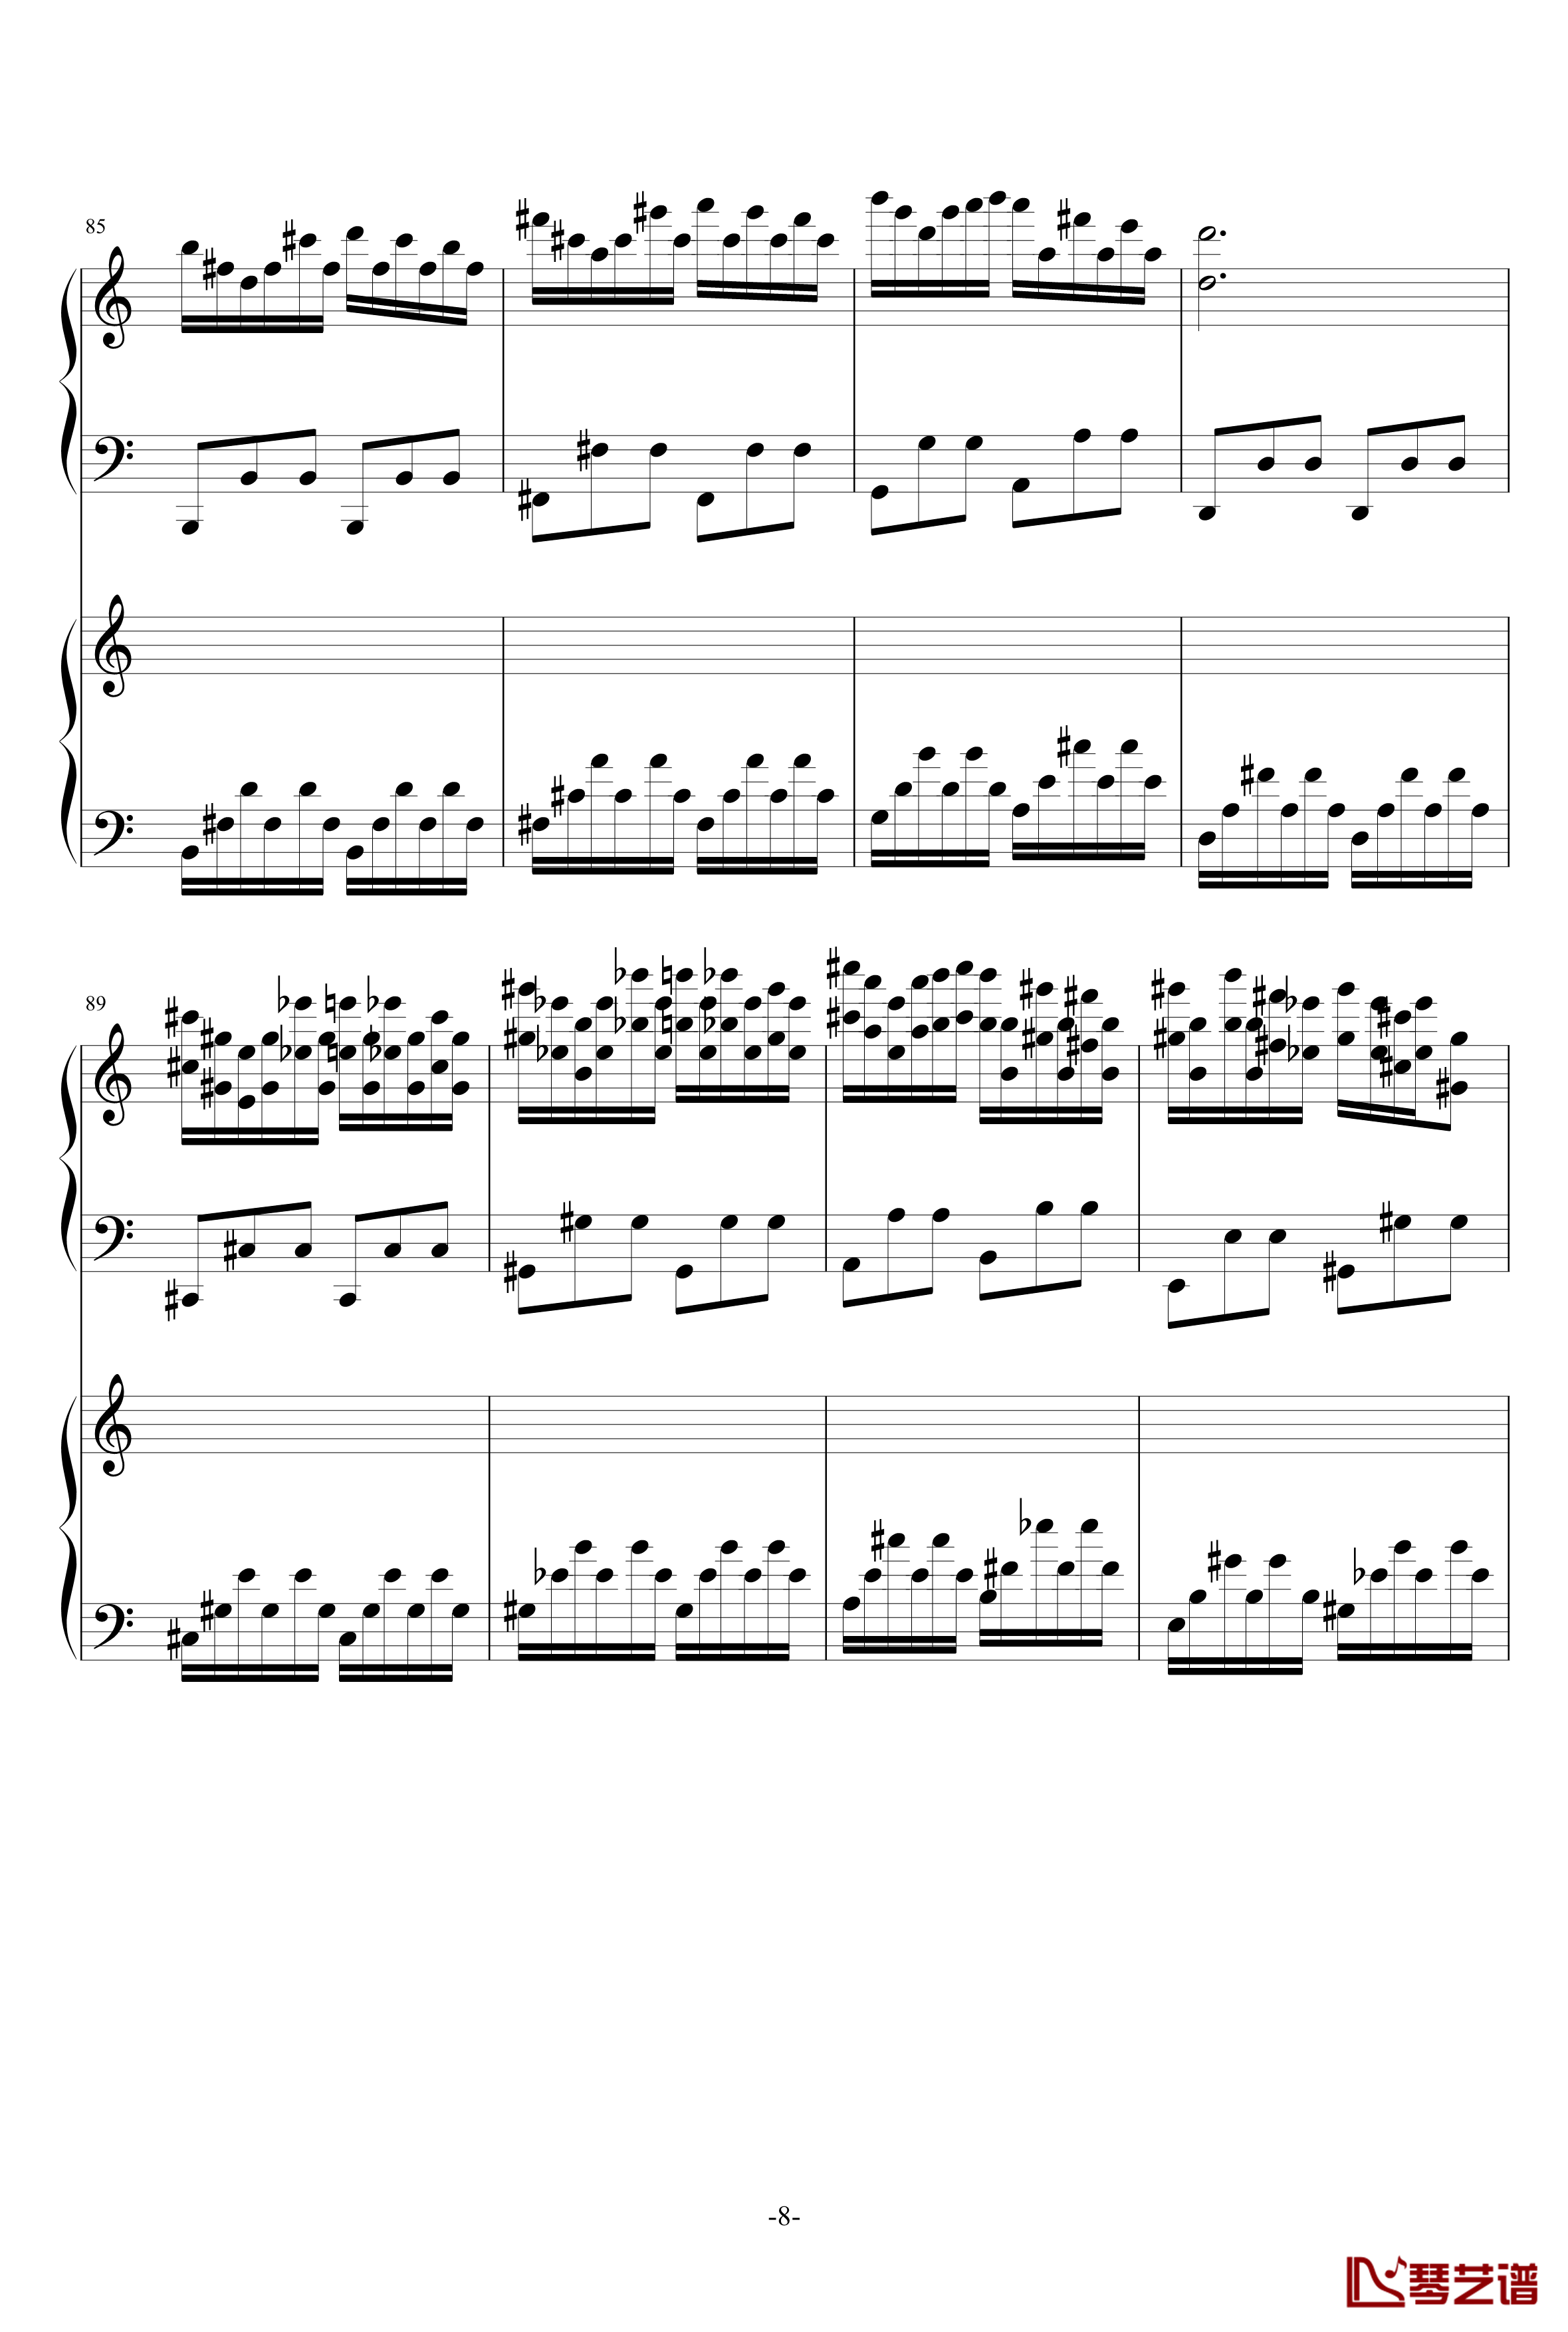 极品钢琴高手练习曲3钢琴谱-as21348